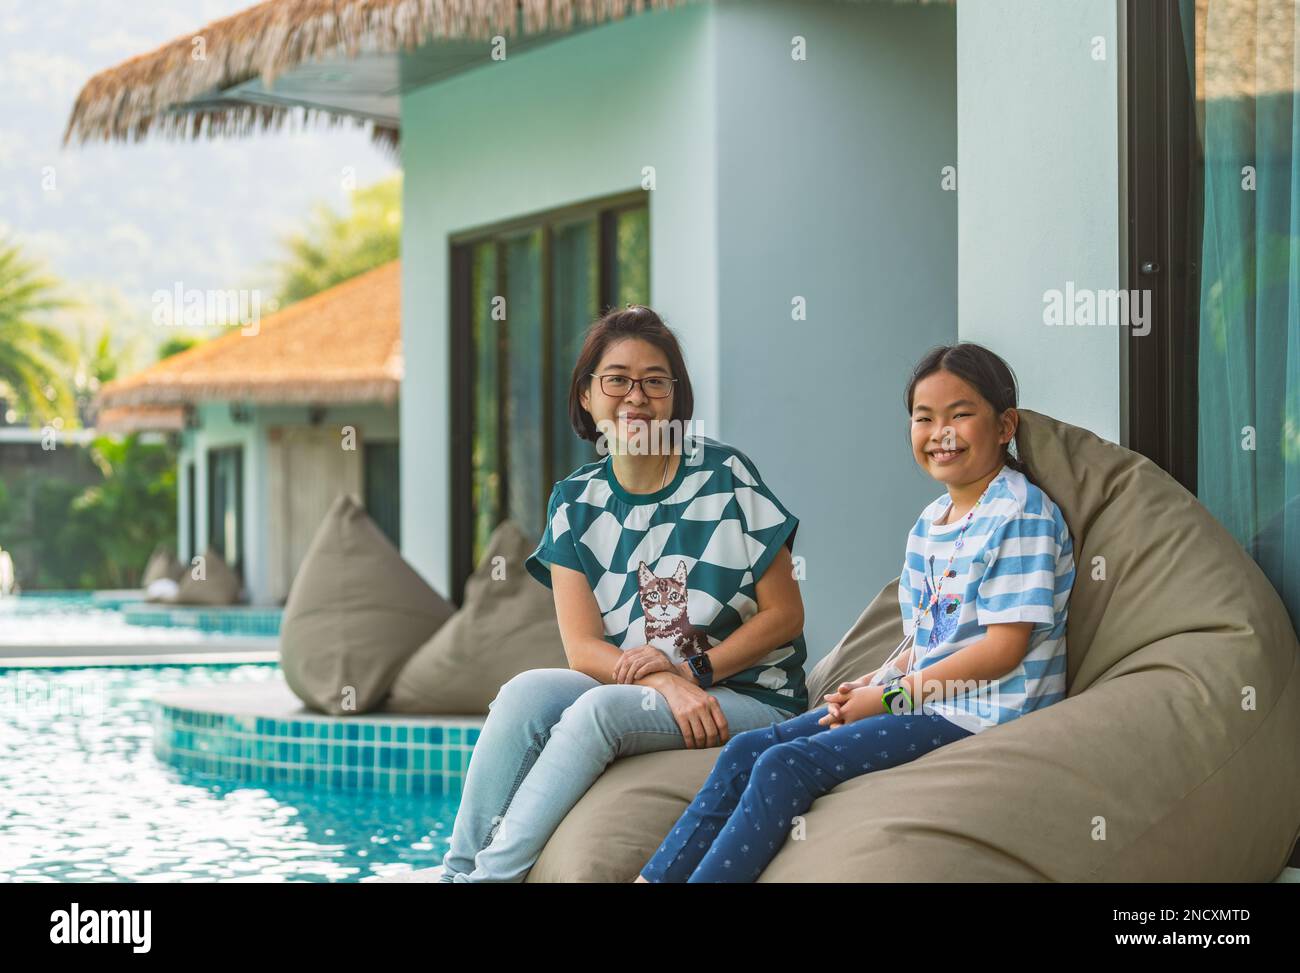 Porträt asiatische Mutter und Tochter sitzen auf einem Sitzsack am Pool eines Resorts, eine Frau mittleren Alters und ein Mädchen mittleren Alters im Alter von 8 oder 9 Jahren. Stockfoto